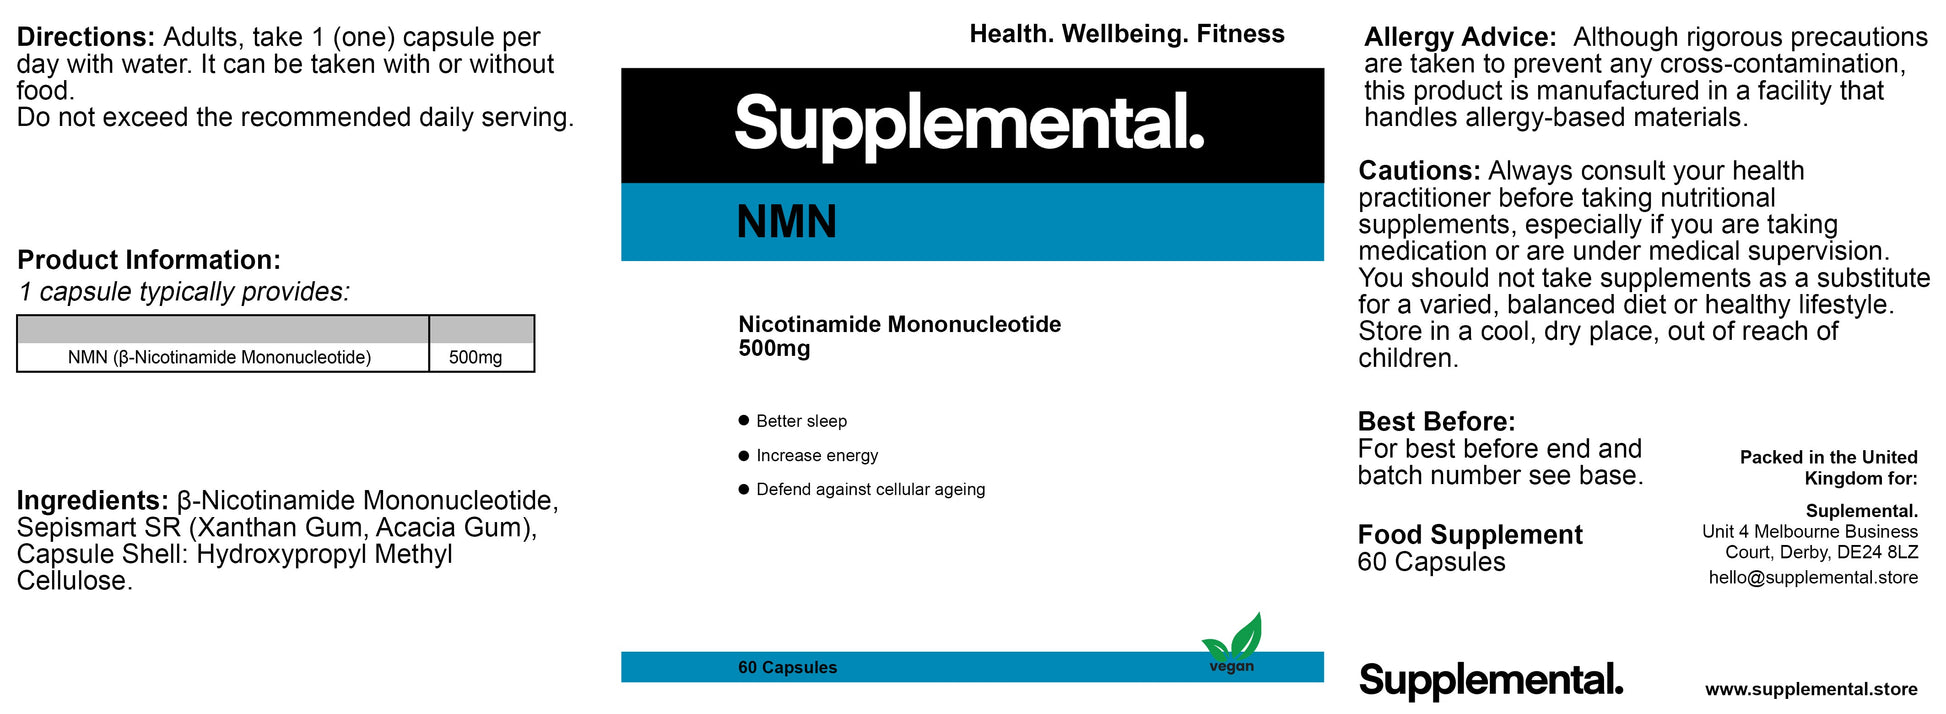 NMN - Supplemental